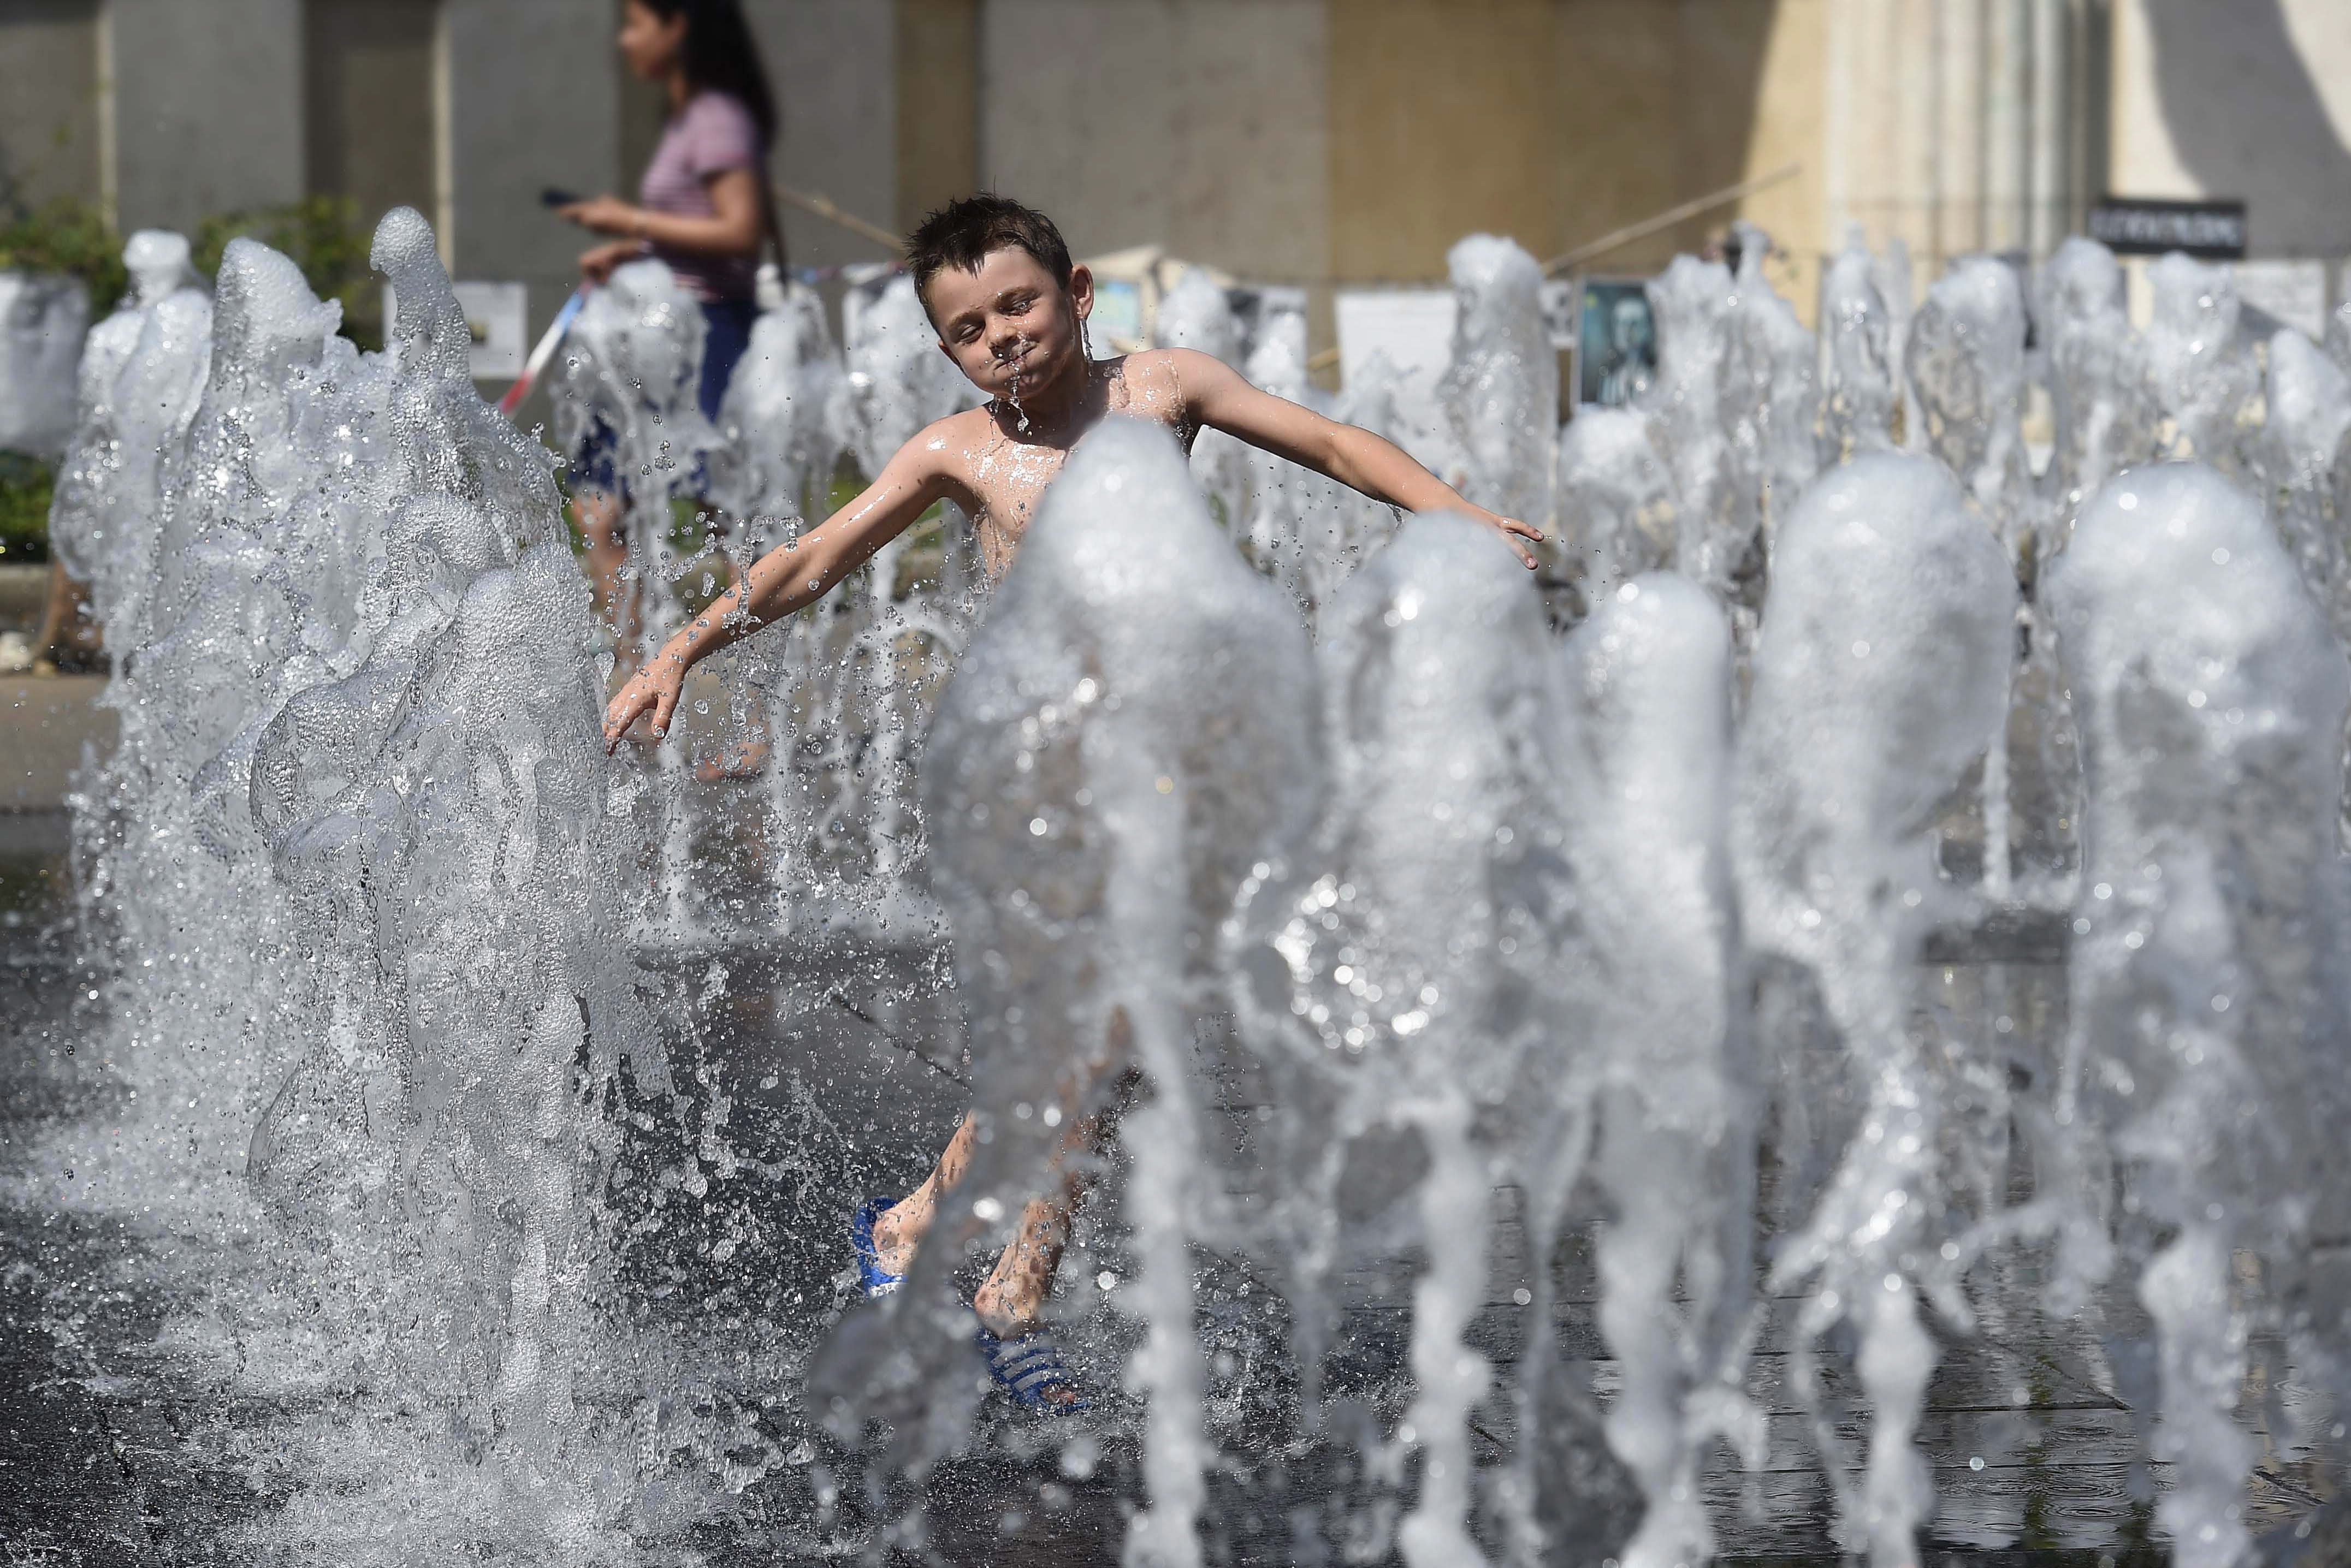 8月12日,在匈牙利布达佩斯,一名小男孩在喷泉处戏水